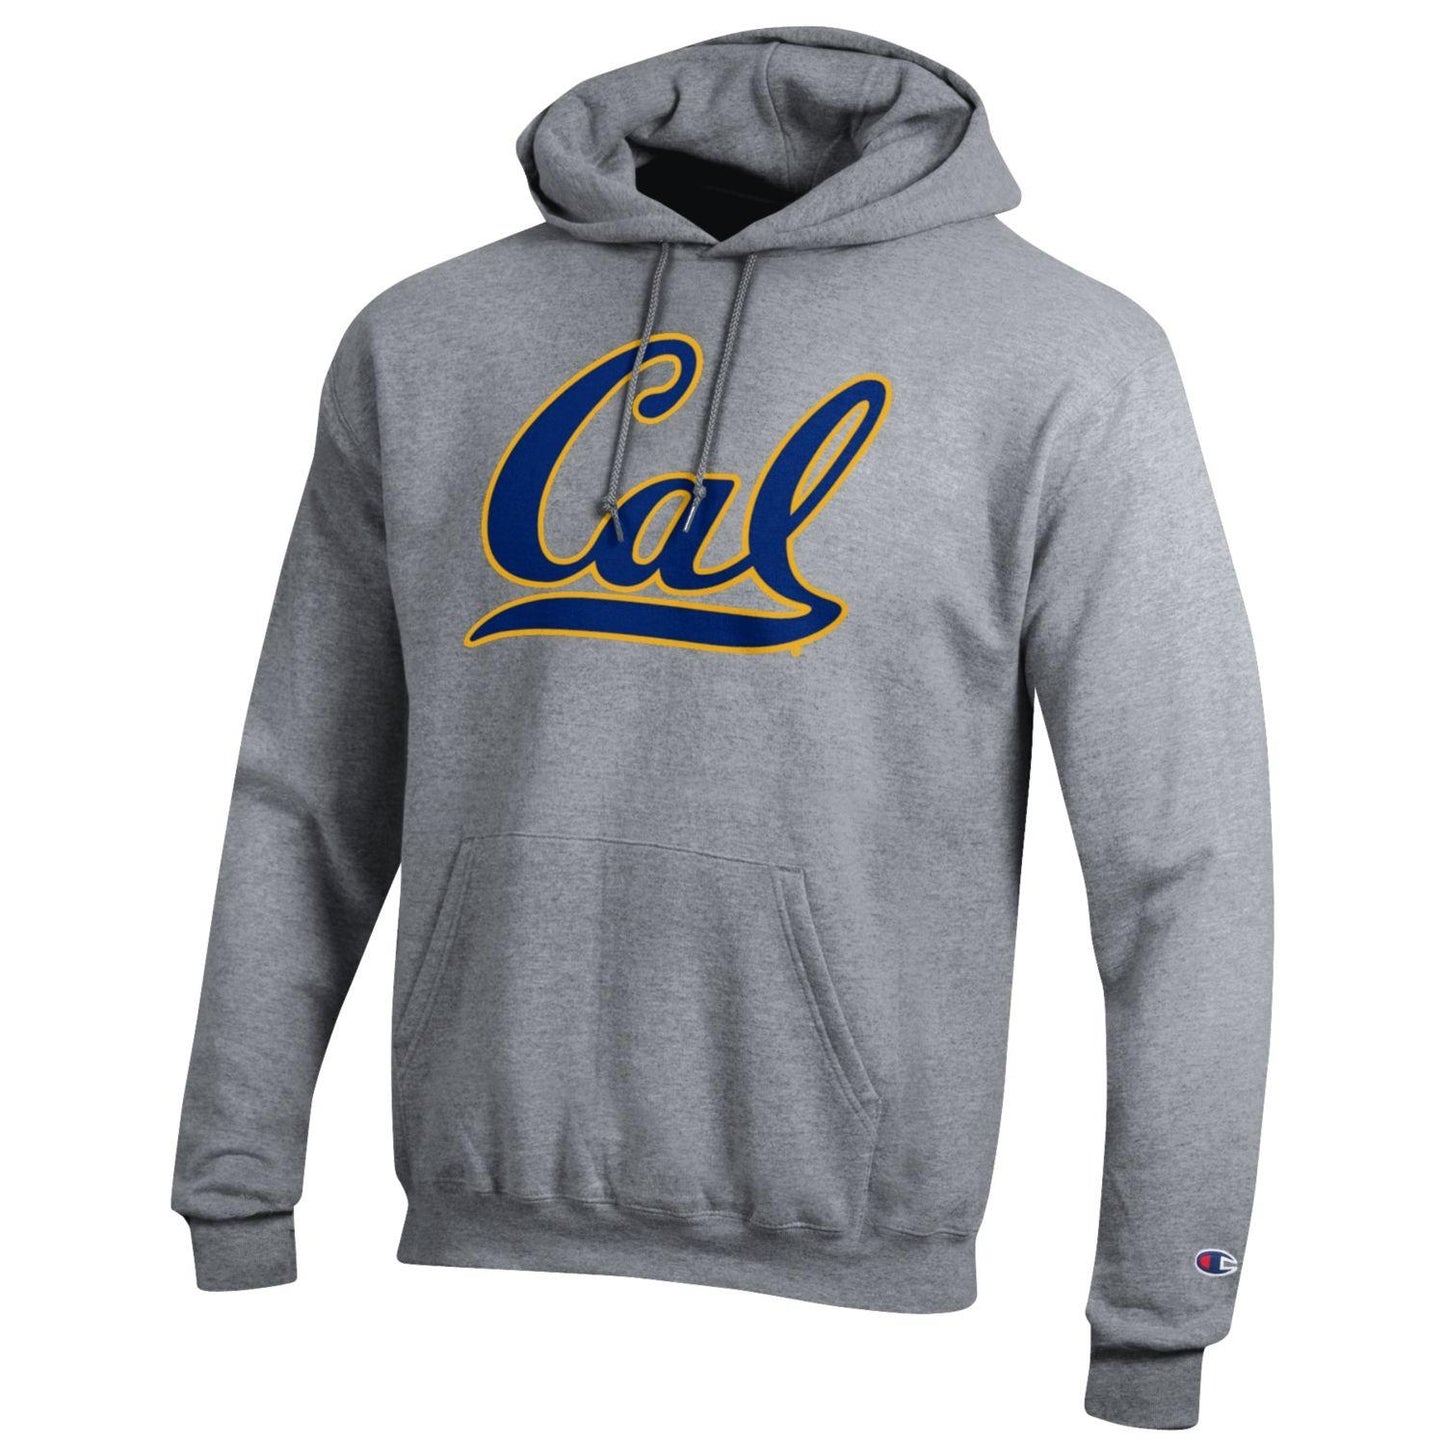 U.C. Berkeley Cal double applique Champion hoodie sweatshirt-Gray-Shop College Wear